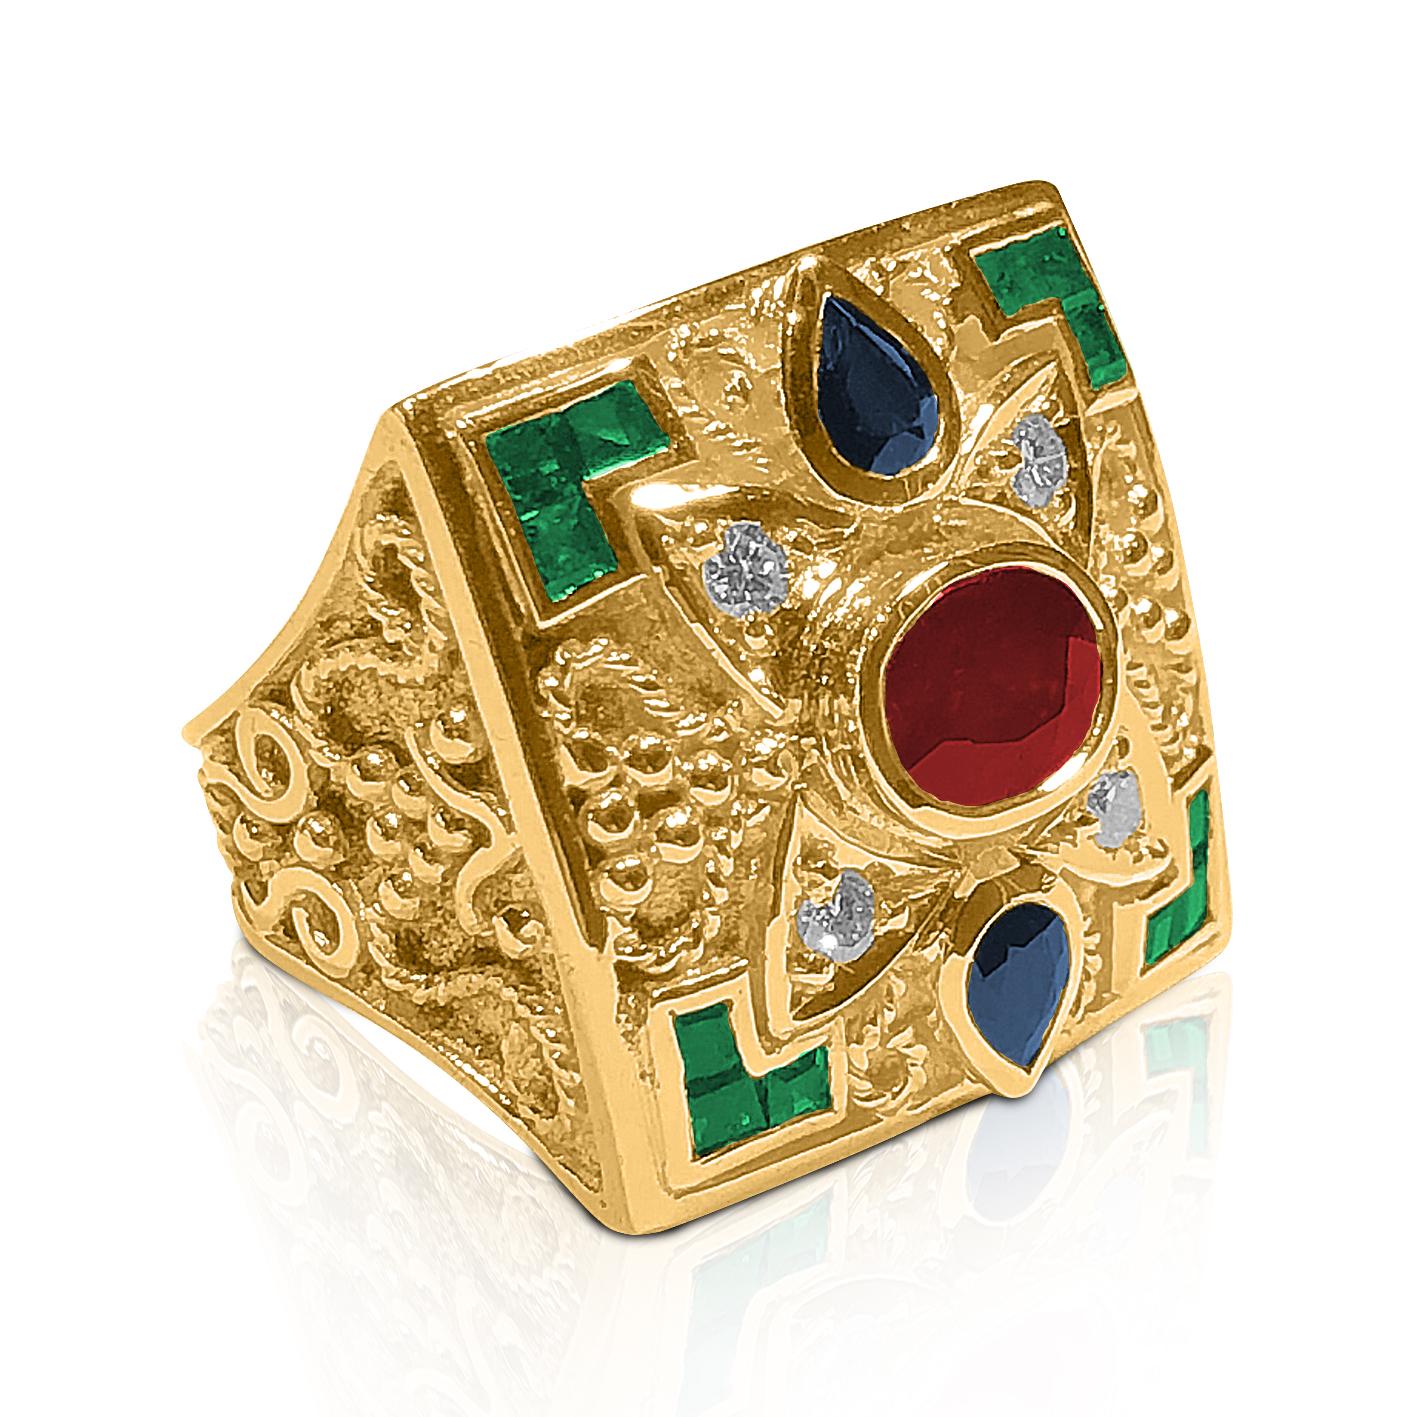 Dieser Ring von S.Georgios ist aus 18 Karat Gelbgold handgefertigt und mikroskopisch mit Golddrähten und Perlen verziert. Die körnigen Details kontrastieren mit dem byzantinischen Hintergrund. Dieser wunderschöne Ring hat einen Diamanten im